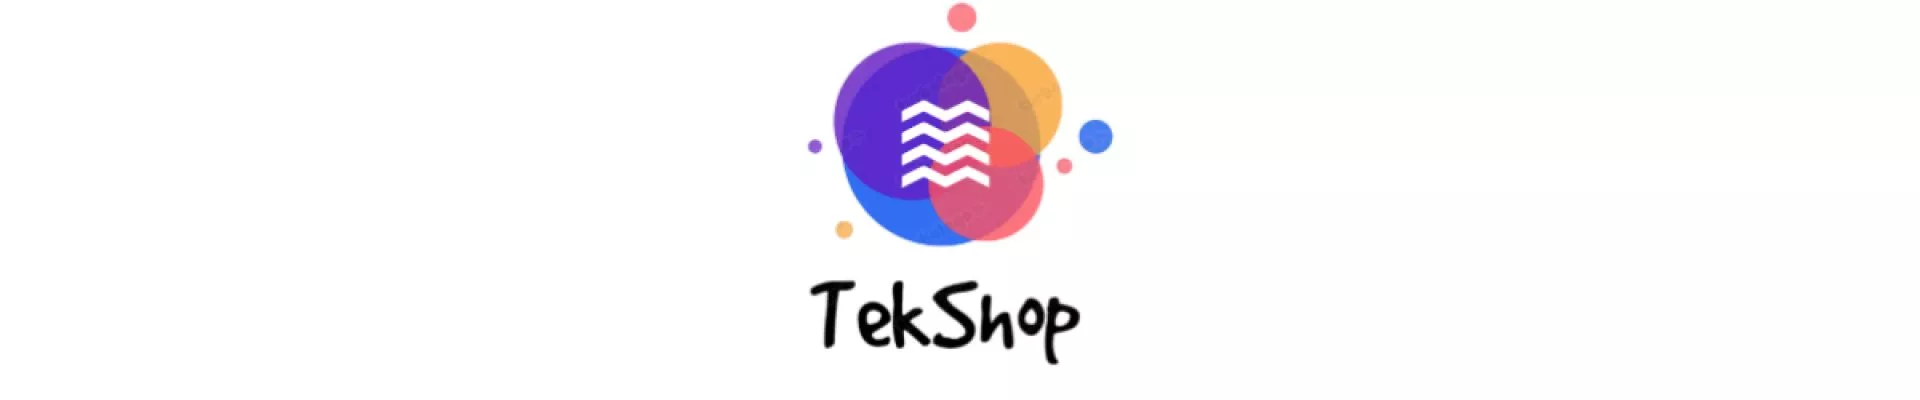 TekShop. kapak fotoğrafı